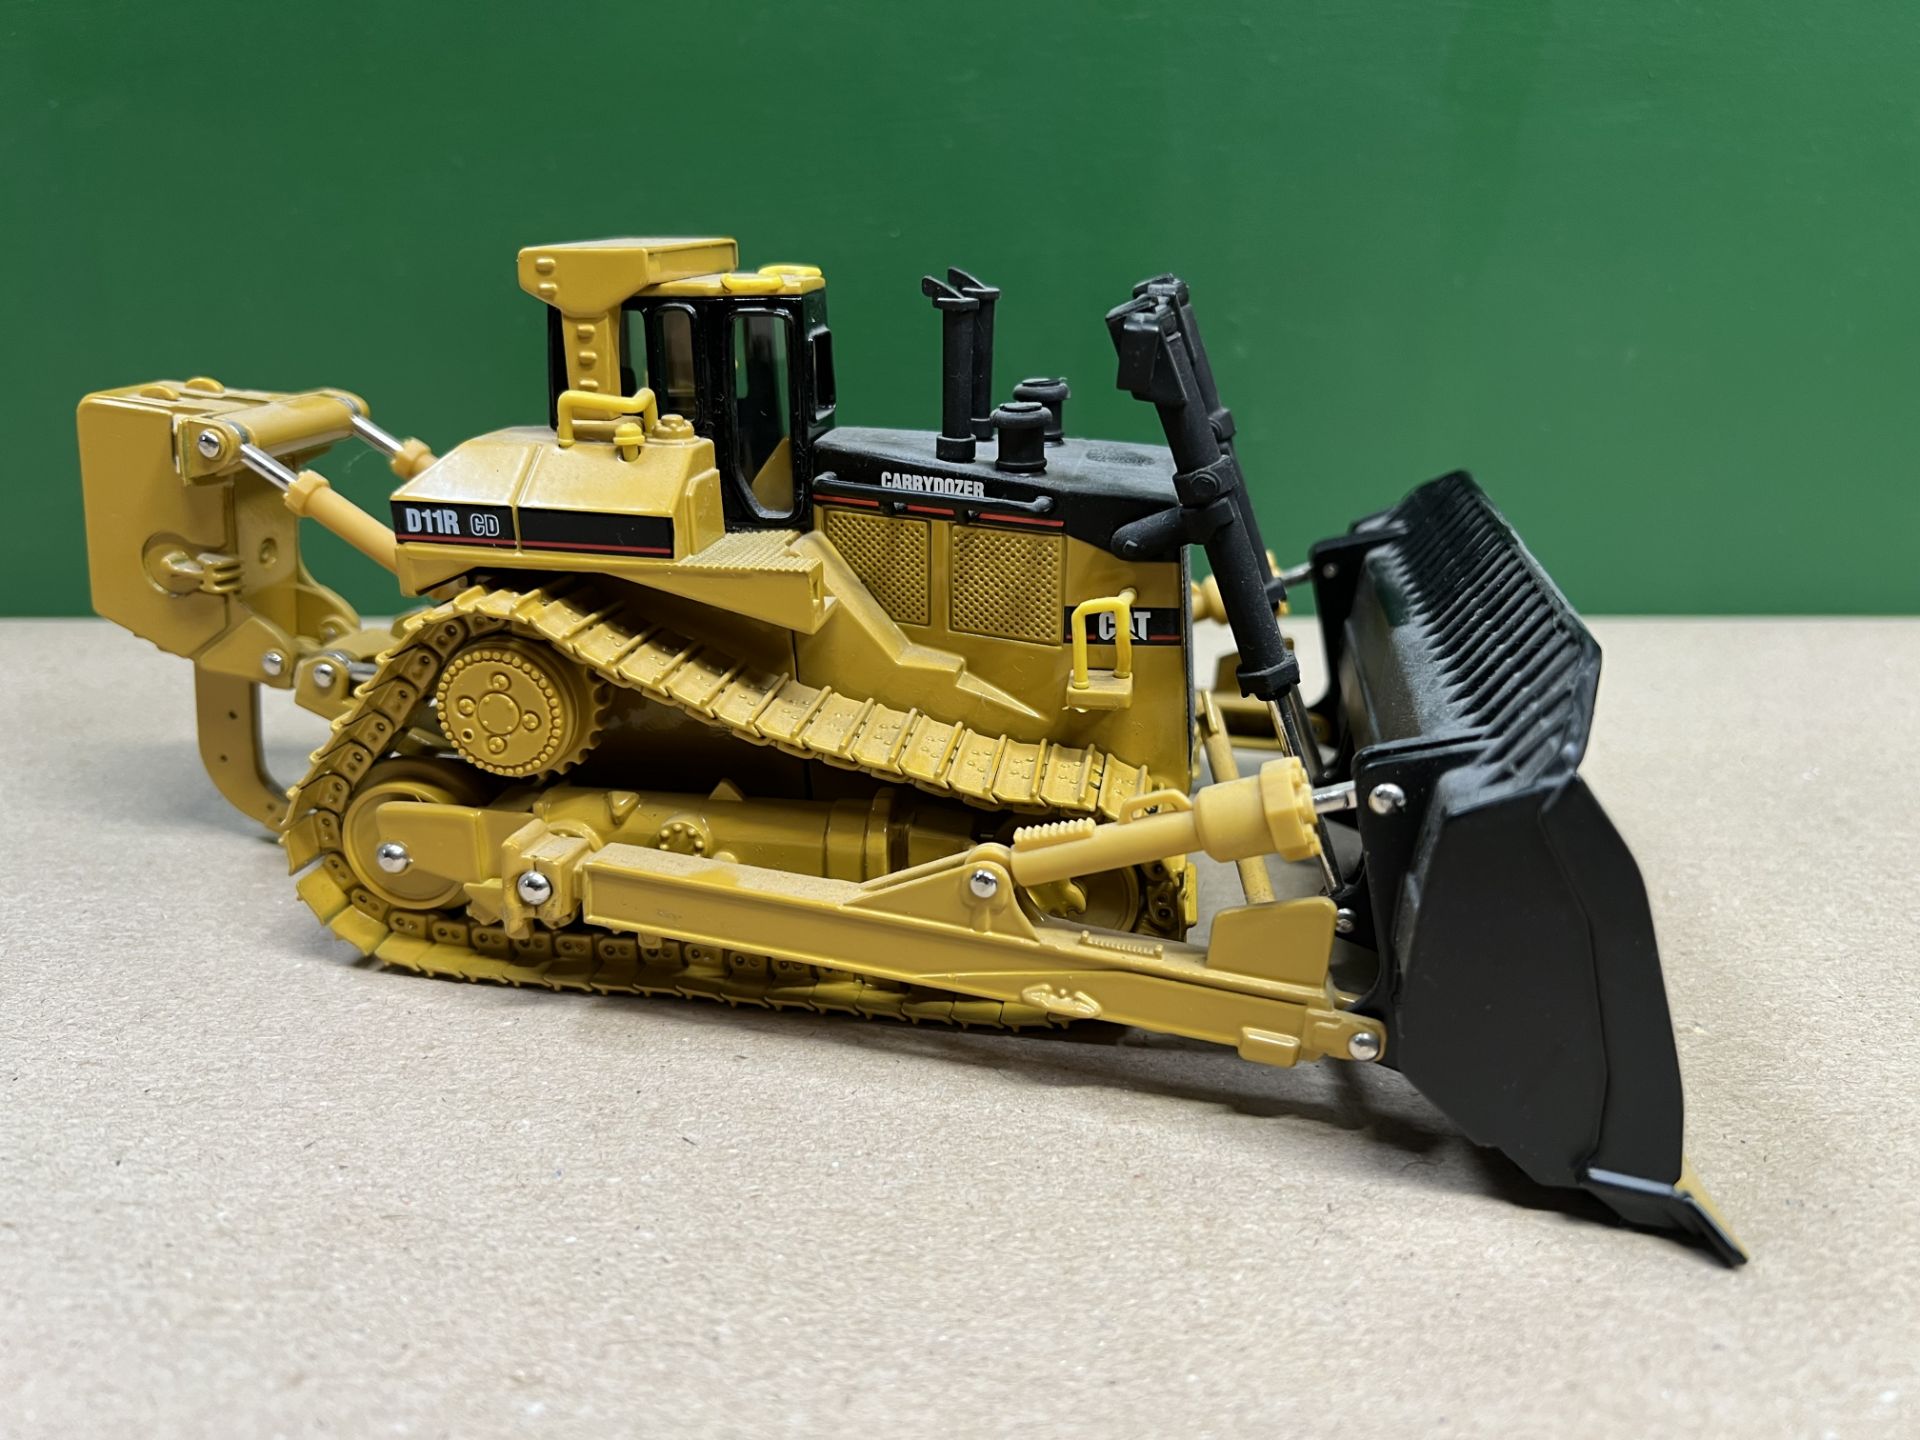 Caterpillar D11R Bulldozer - Image 2 of 5